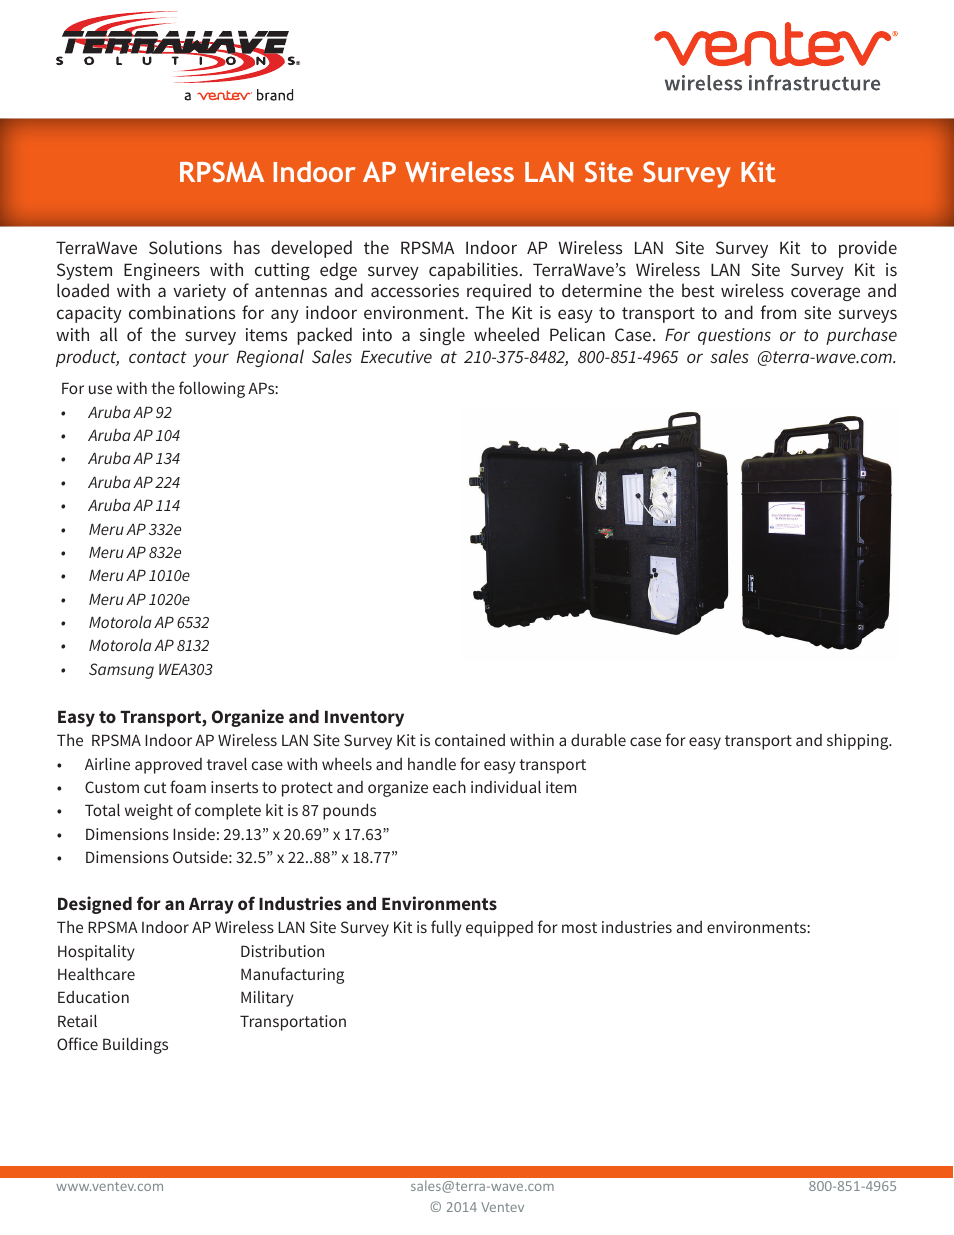 RPSMA Indoor AP Site Survey Kit